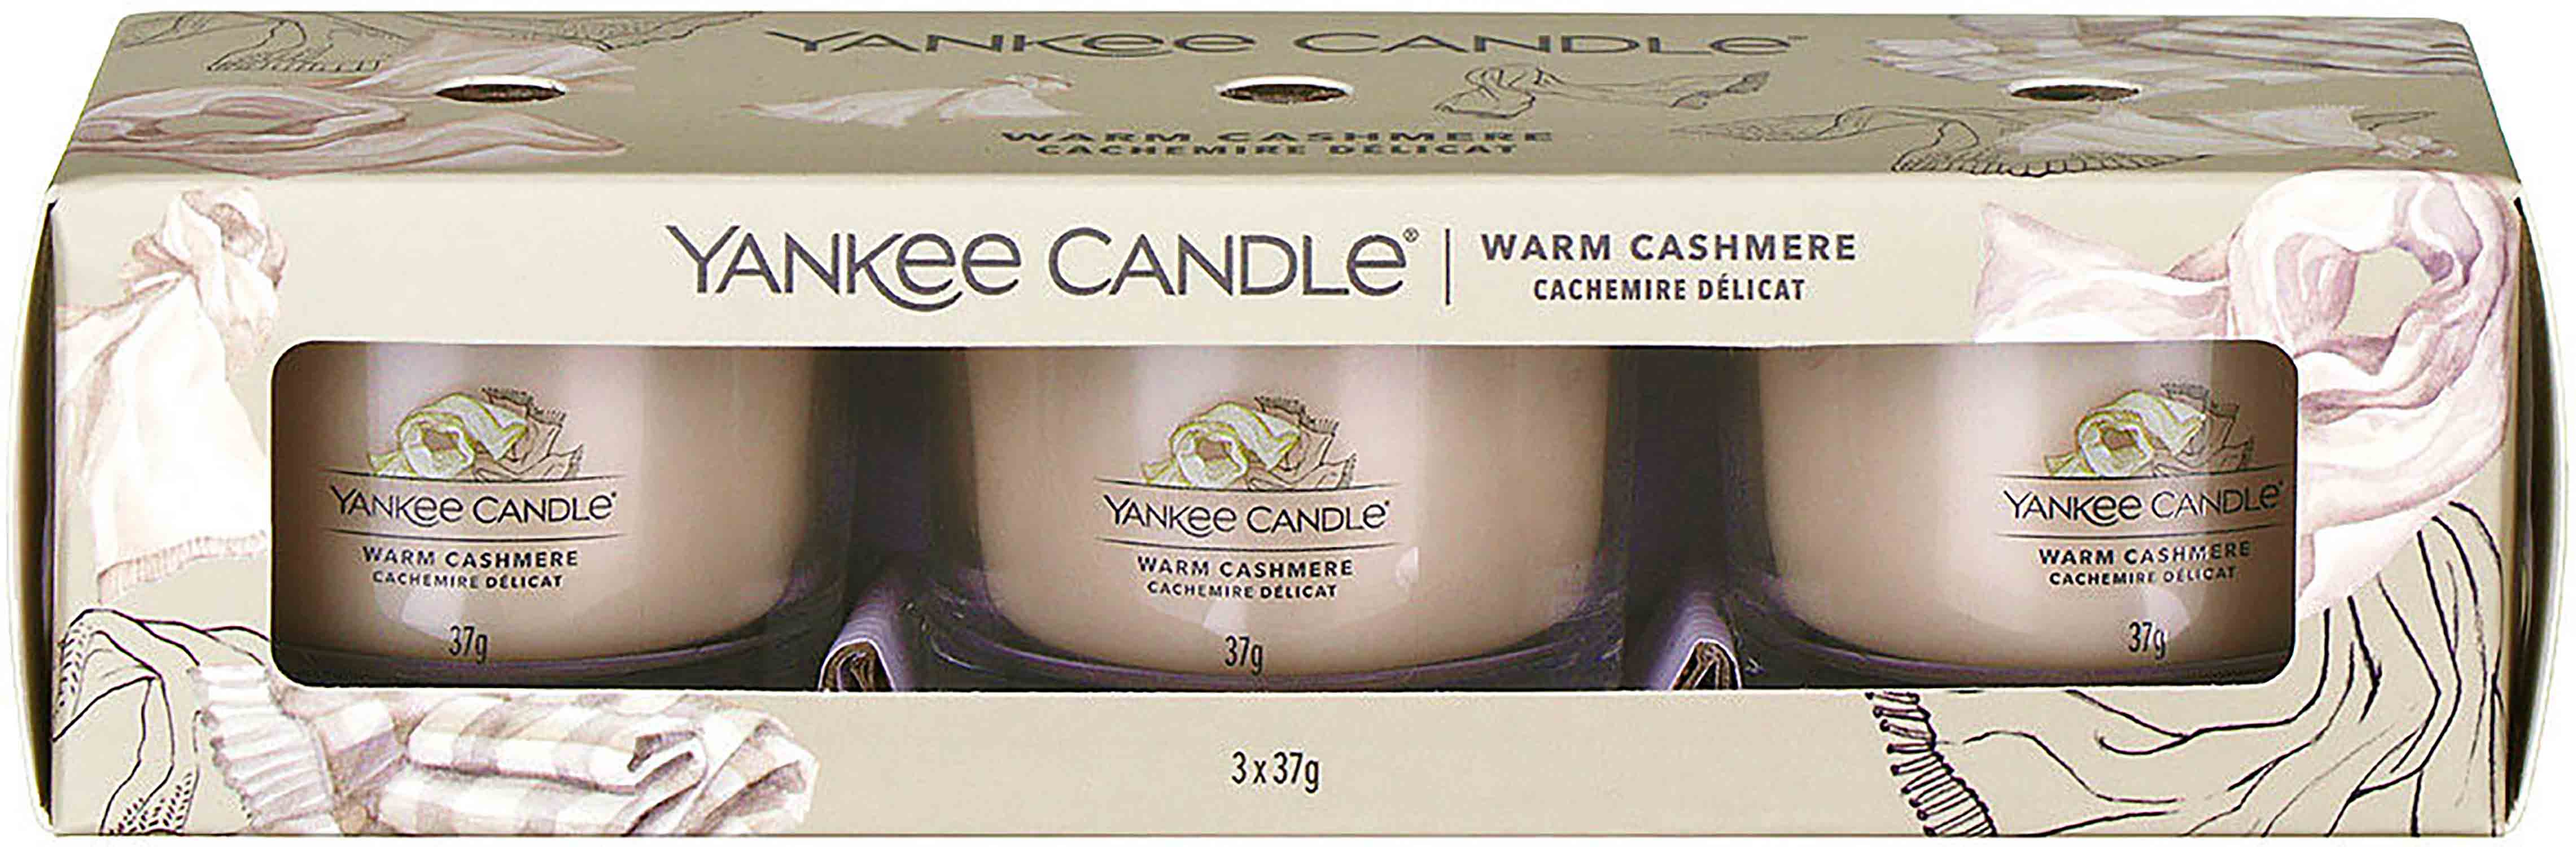 Yankee Candle Warm Cashmere sada votivních svíček